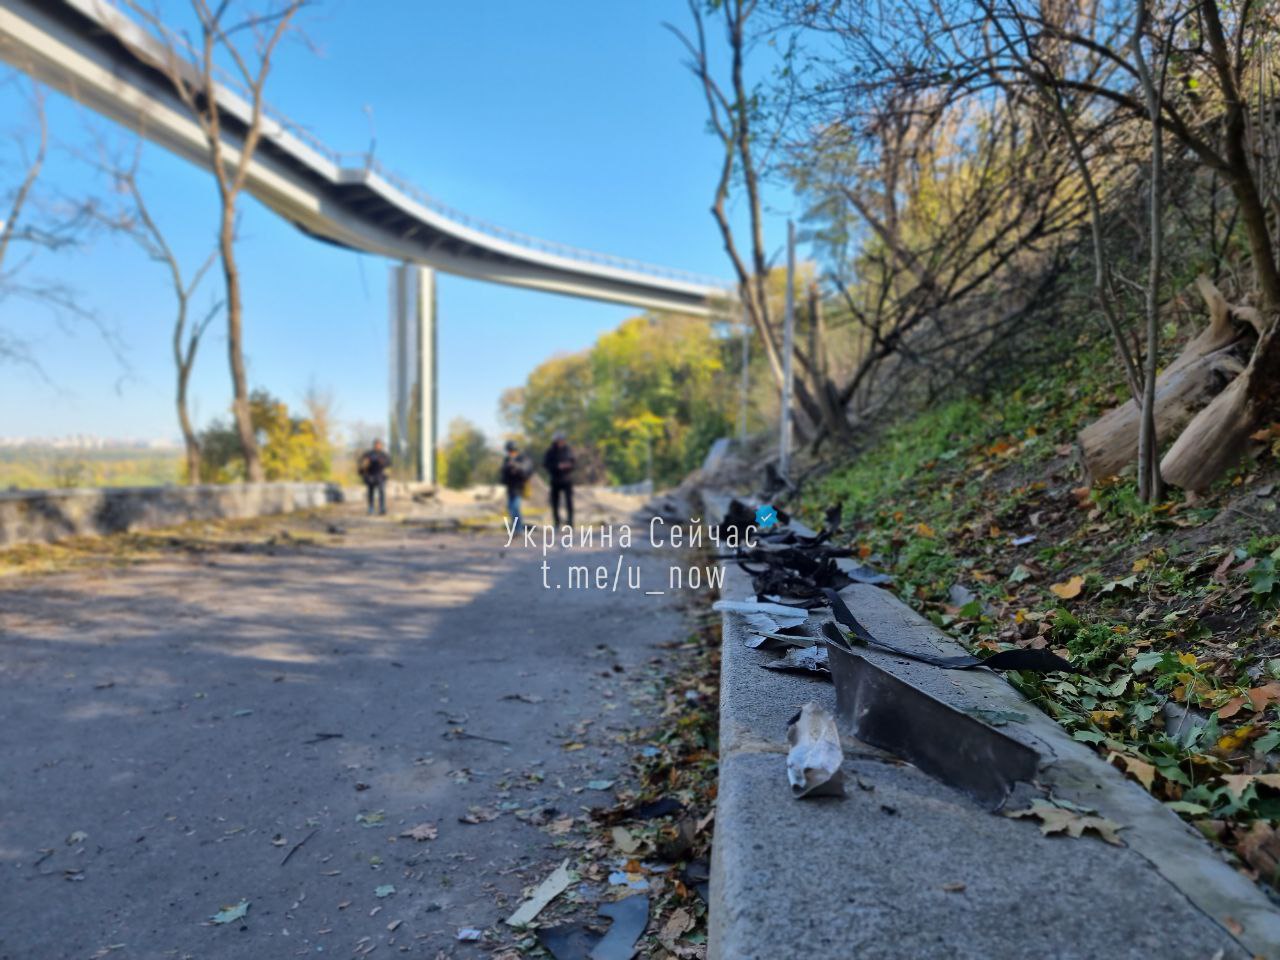 Киев на второй день после прилета: опустевшие улочки, перекрытый пешеходный мост